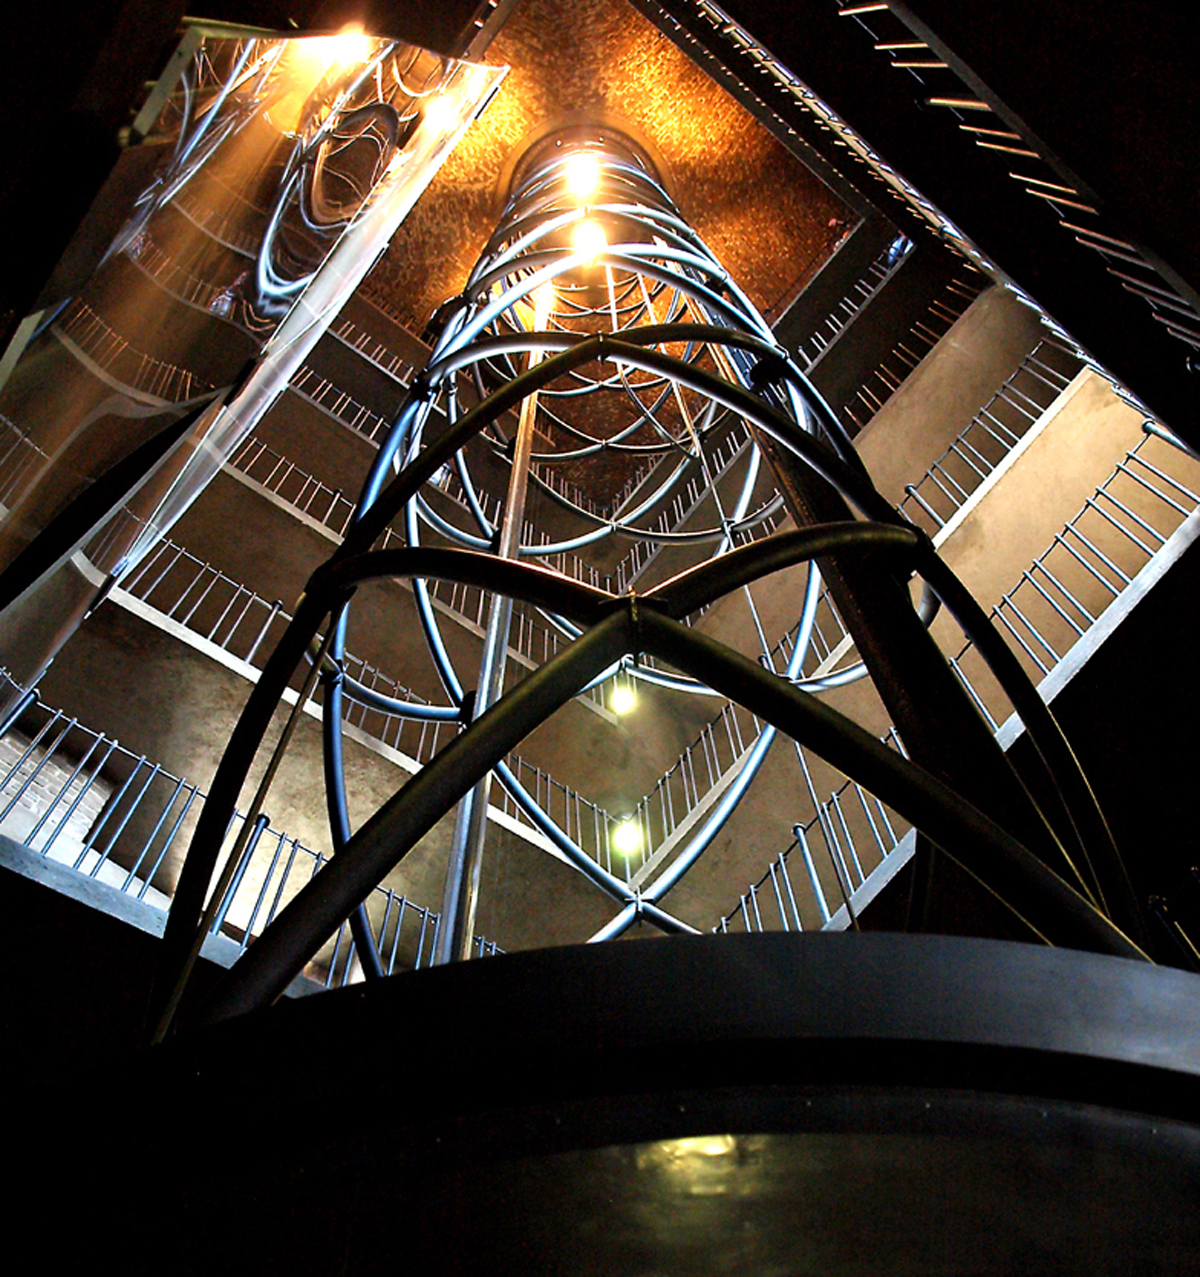 Novodobý výtah ve Staroměstské věži